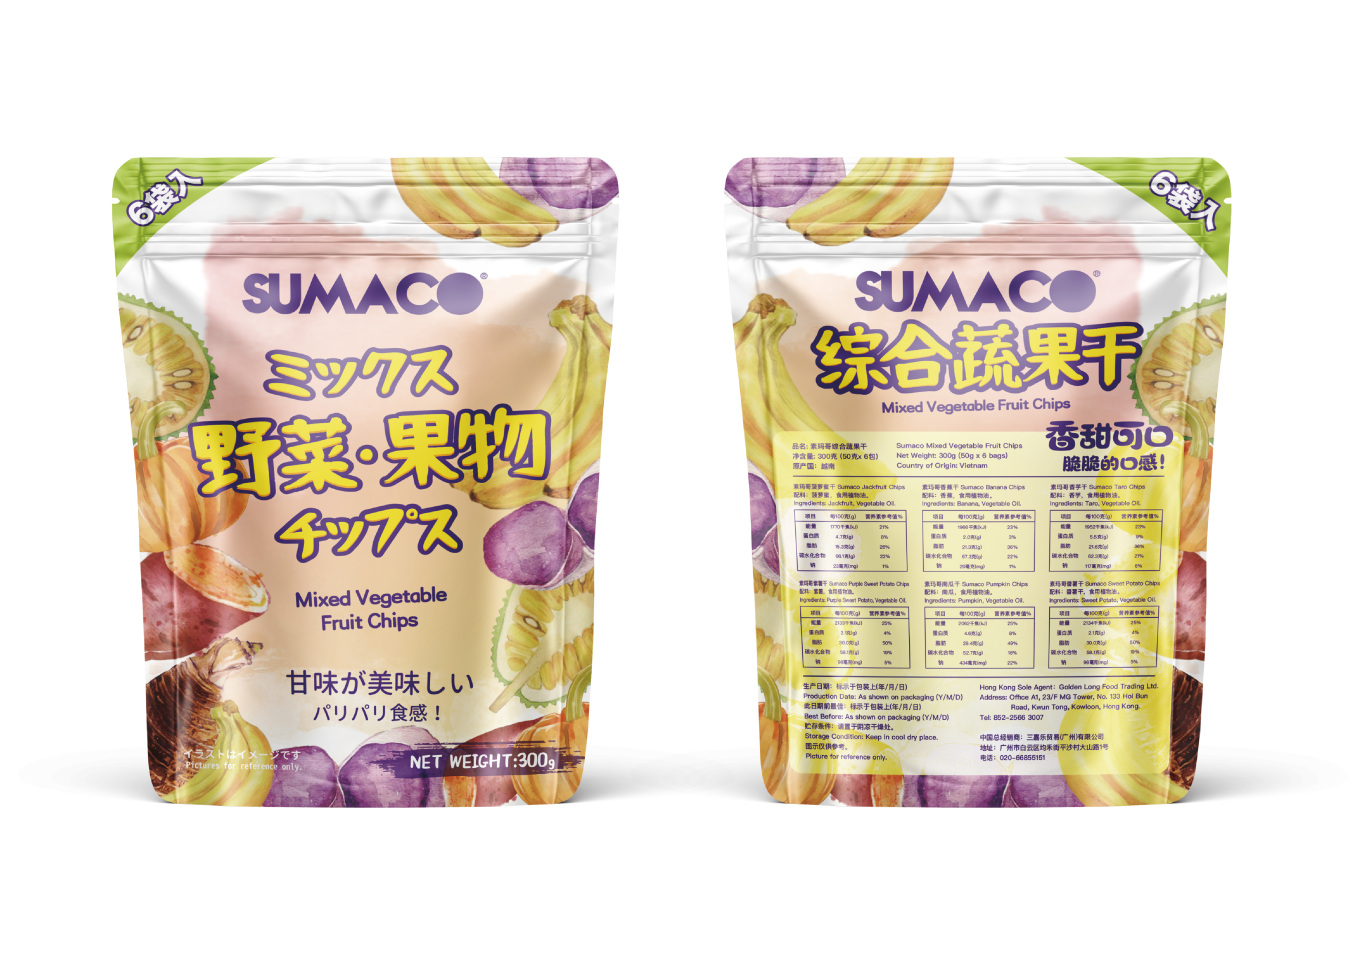 SUMACO素瑪哥綜合蔬果干零食產品包裝設計圖2